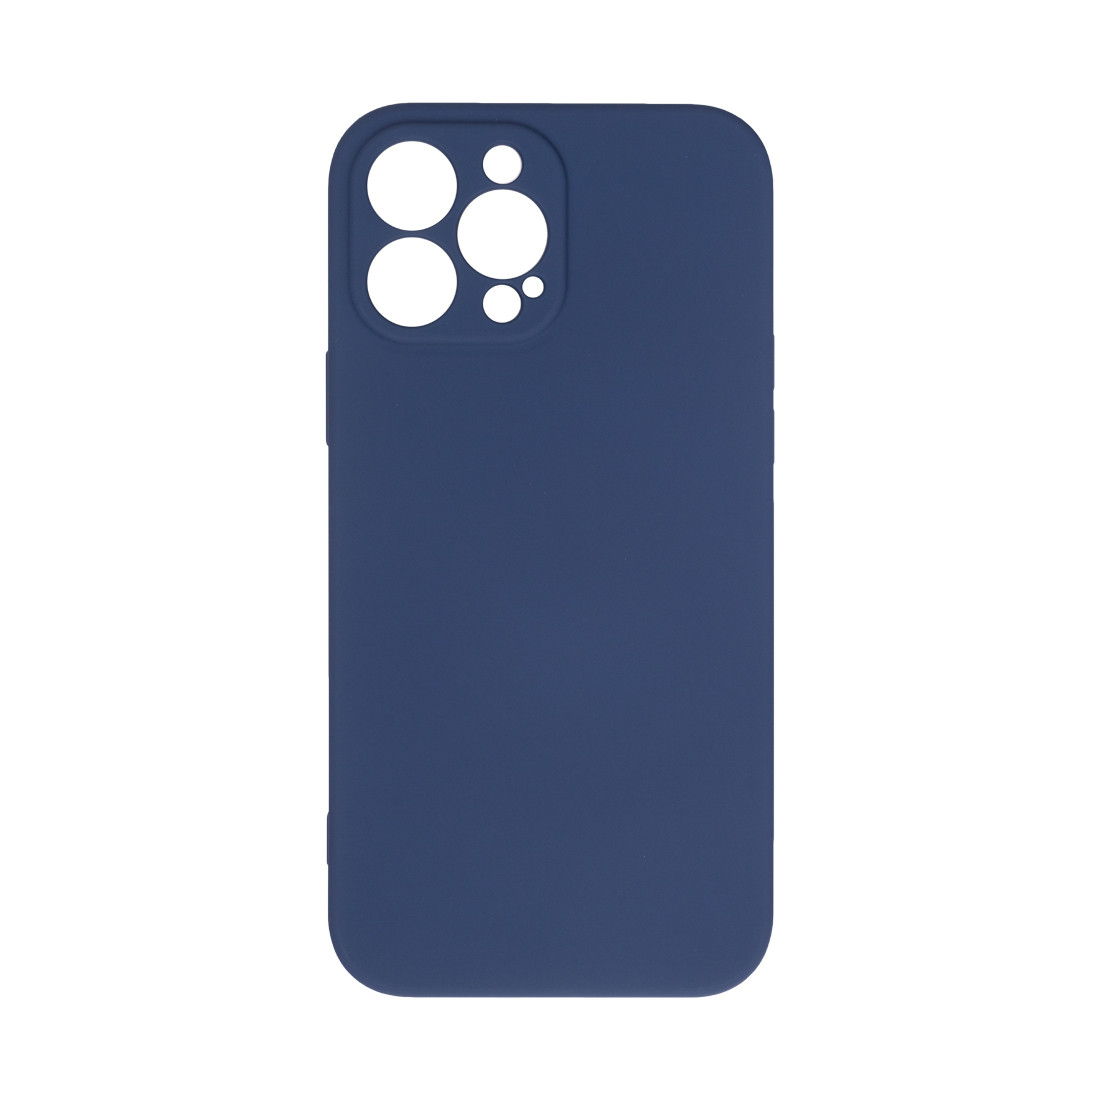 Чехол для телефона  X-Game  XG-HS84  для Iphone 13 Pro Max  Силиконовый  Тёмно-синий  Пол. пакет